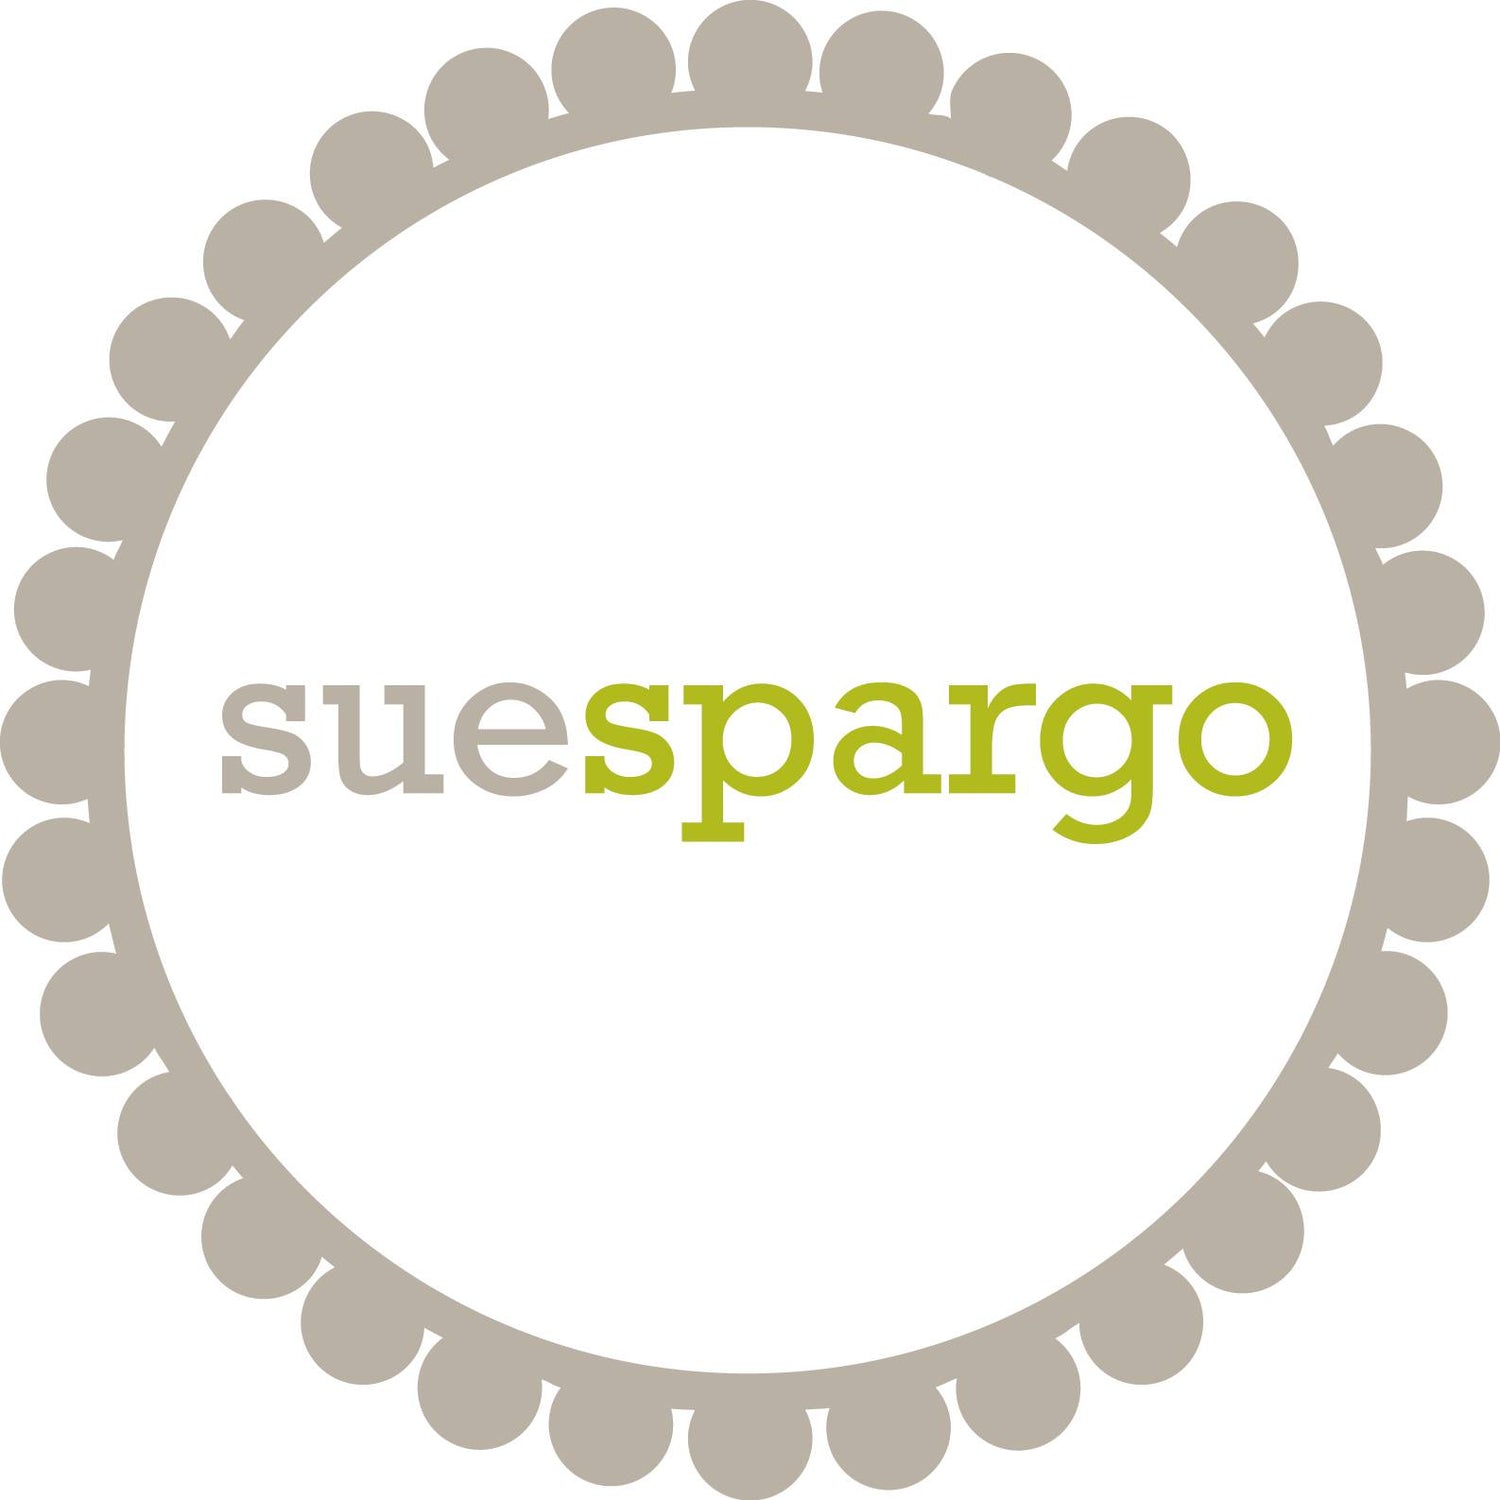 Sue Spargo